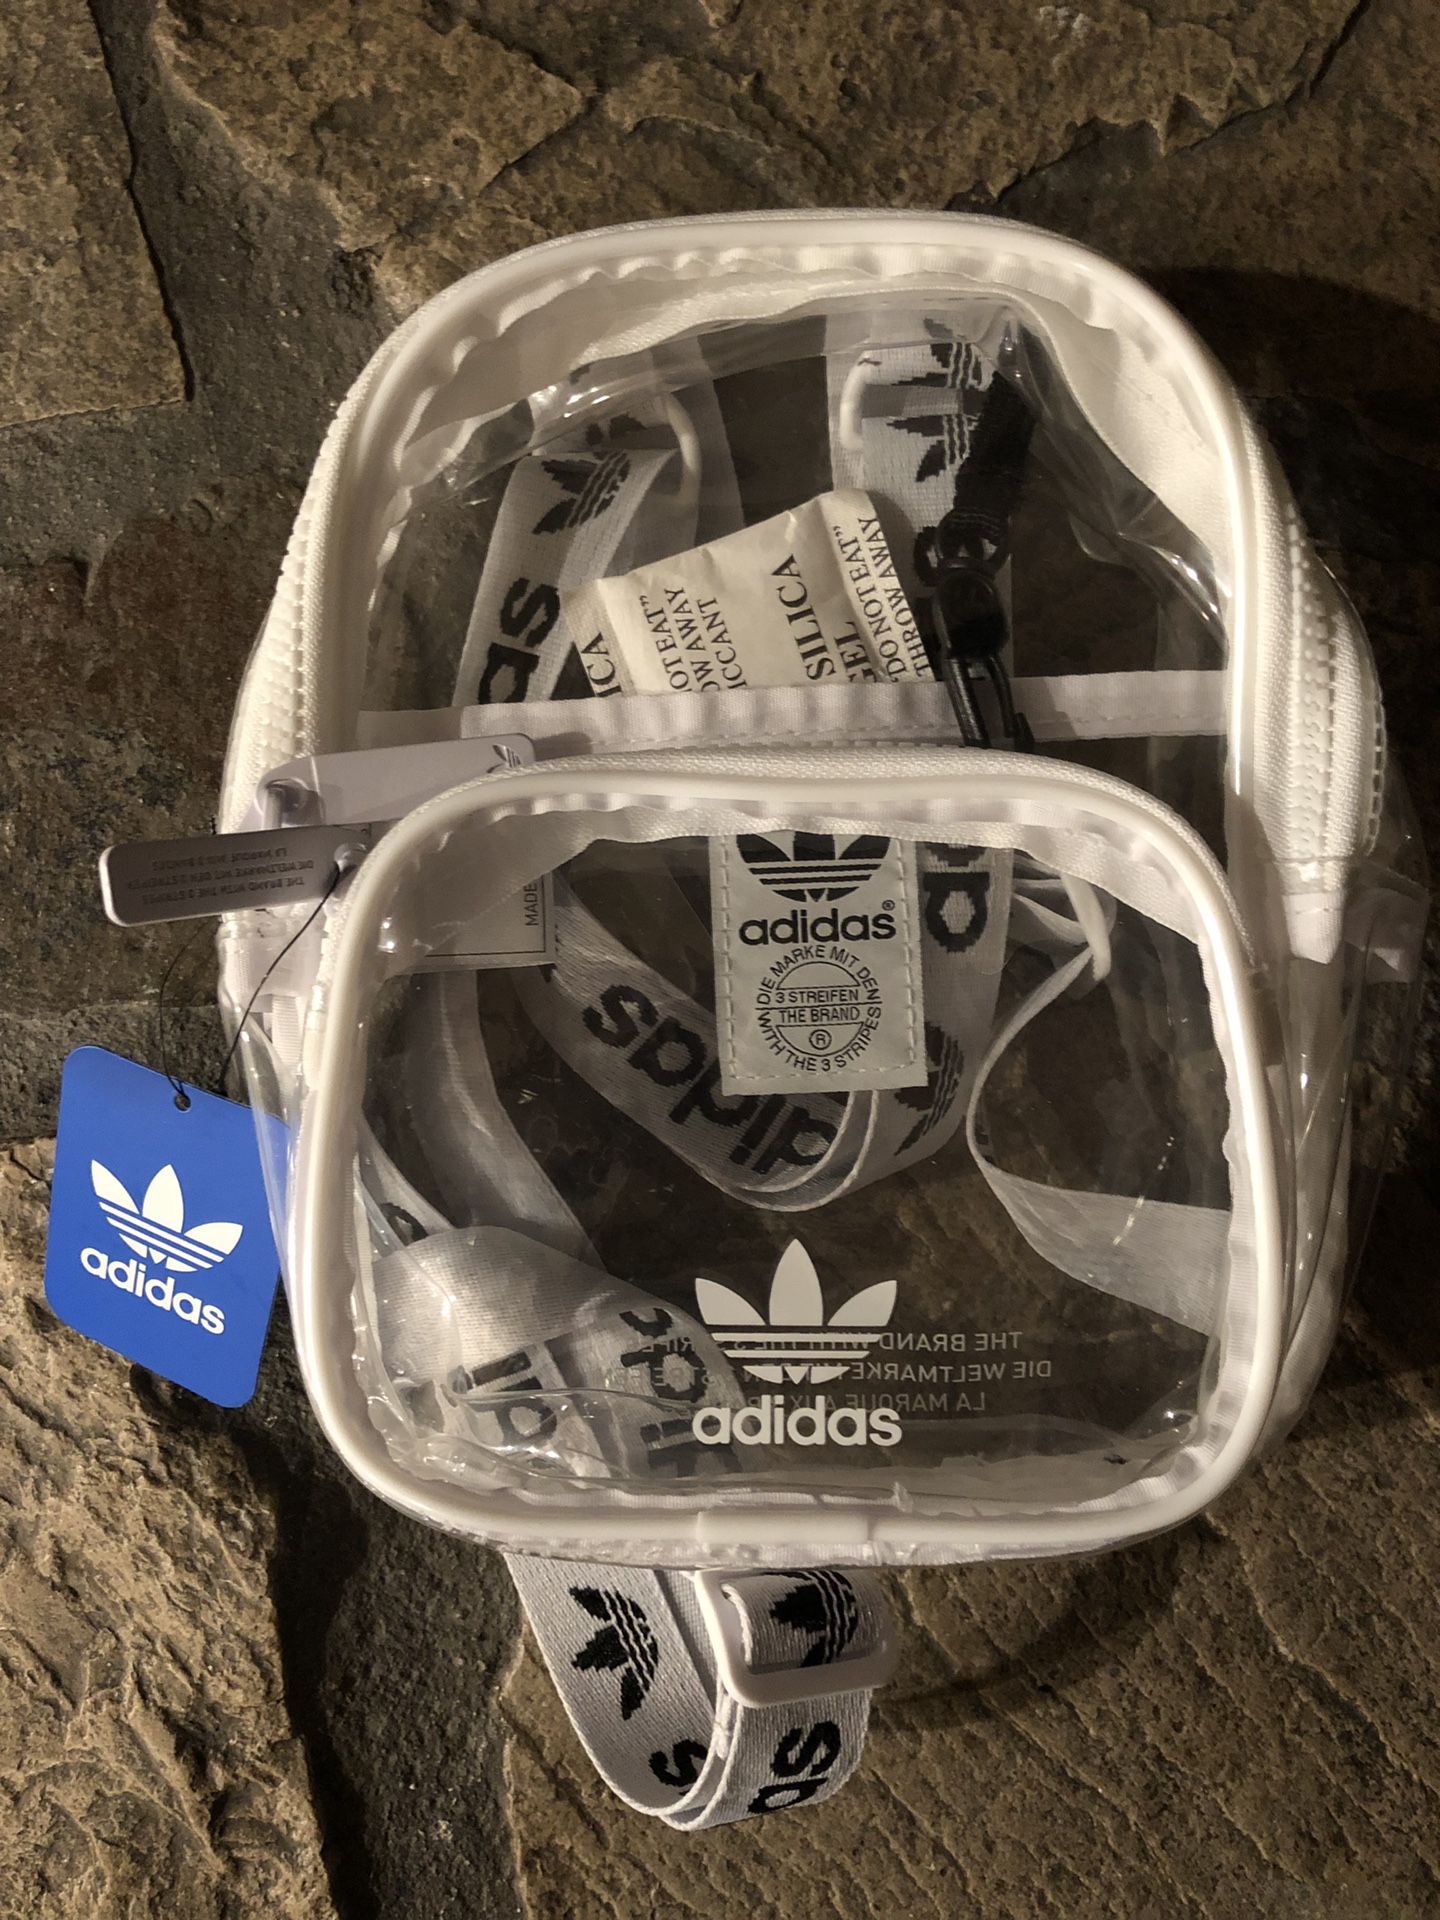 Adidas mini clear backpack